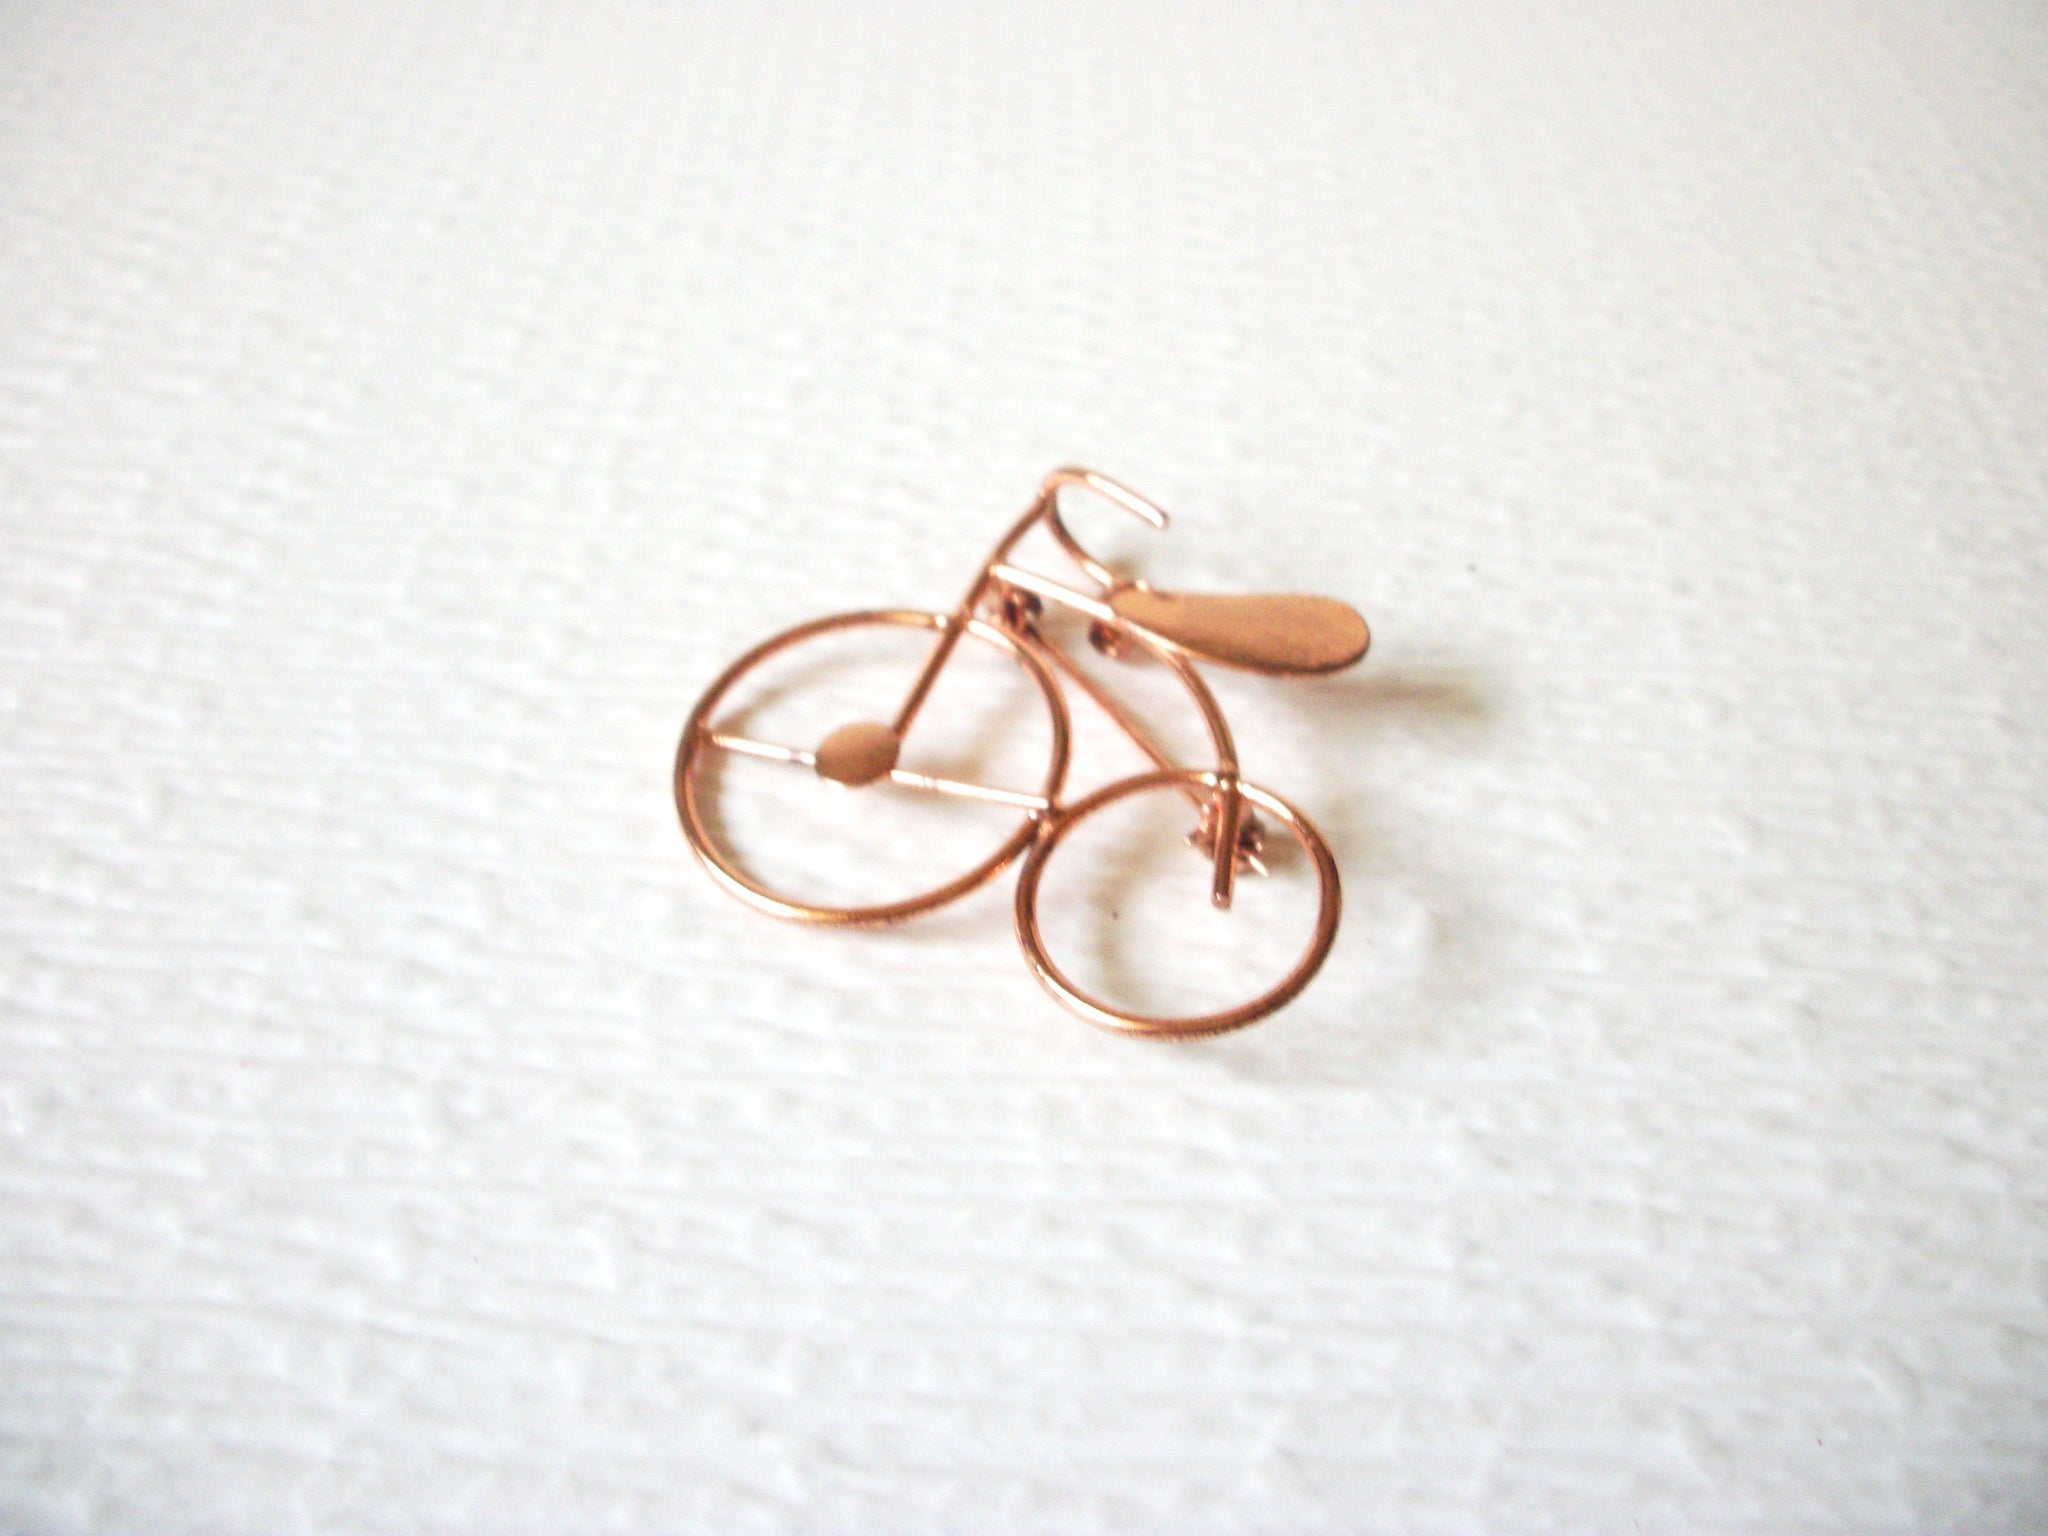 Copper Toned Vintage Tandem Bike Brooch Pin 91317